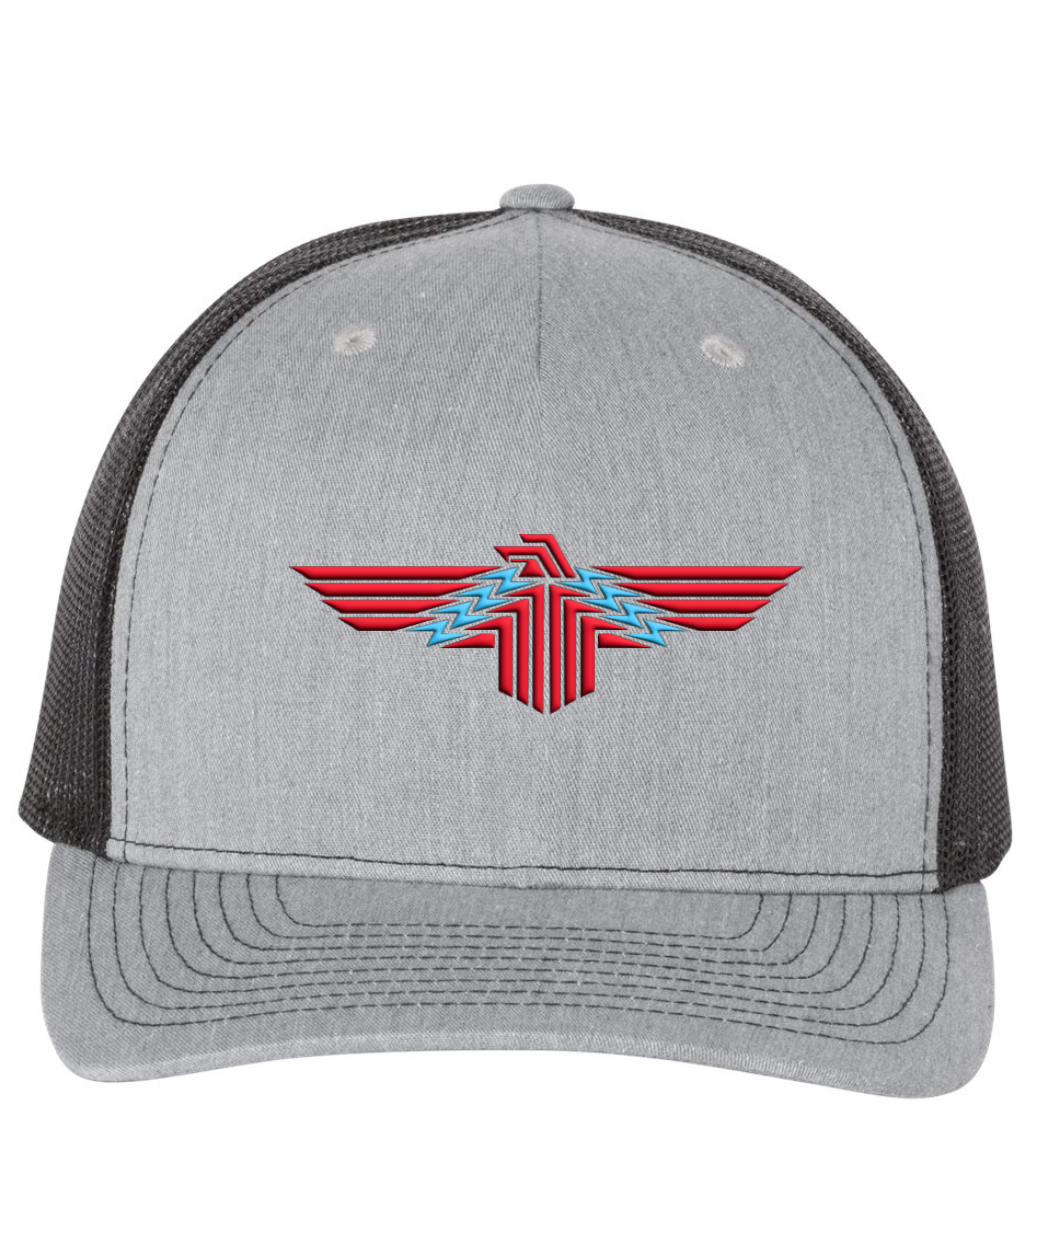 Thunderbird Logo SnapBack Cap